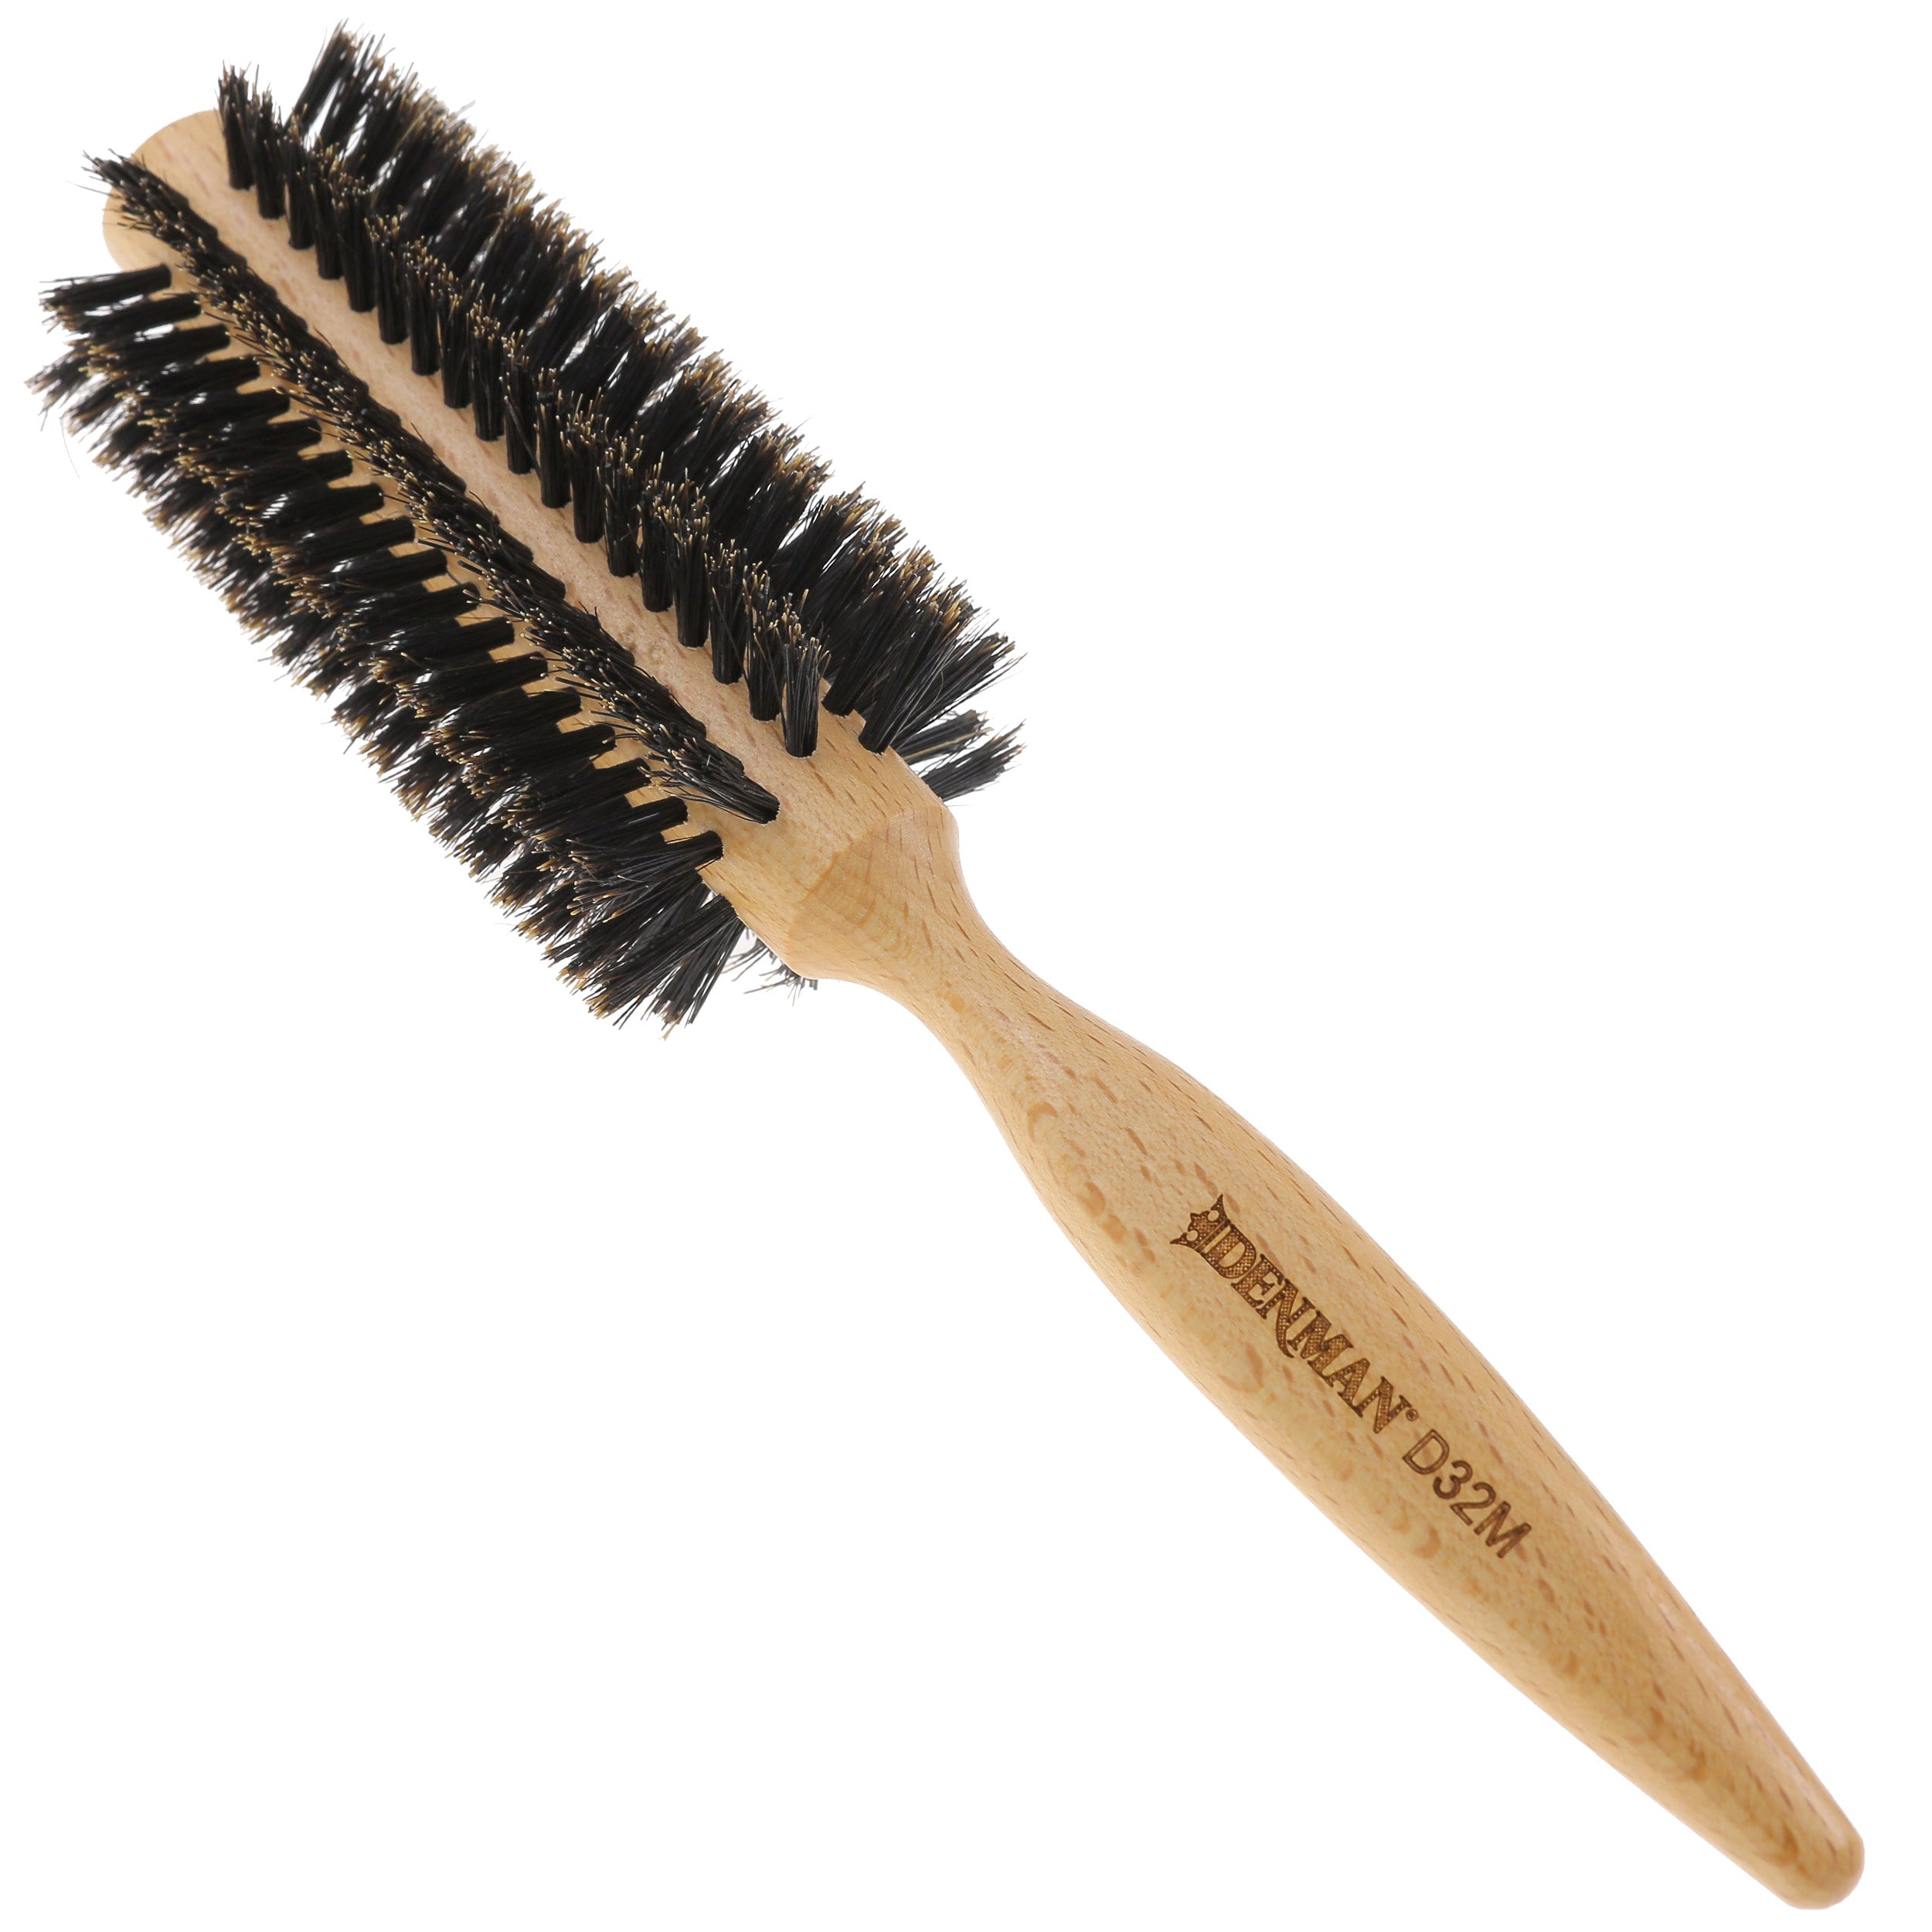 Mason Pearson P15 Handy Bristles Hair Brush - Bayside Brush Co.